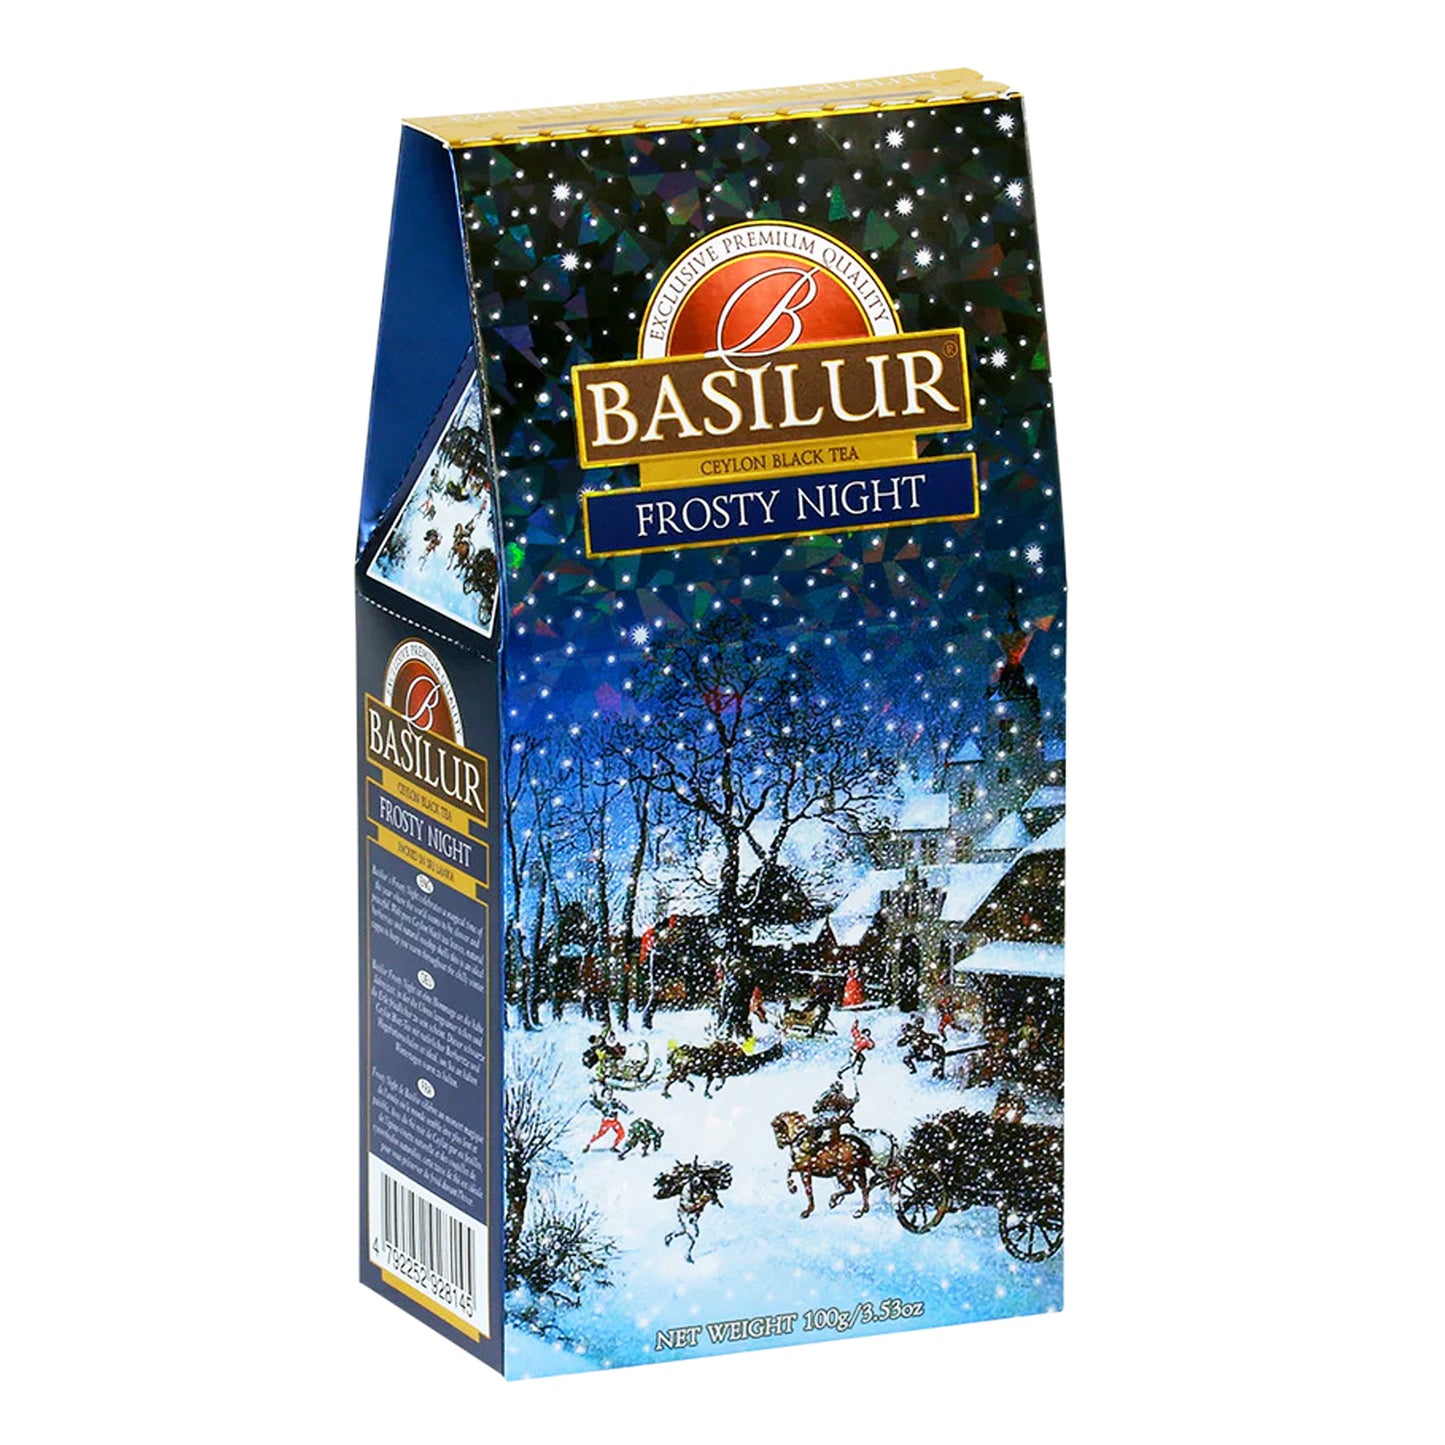 Basilur Frosty Night (100g)